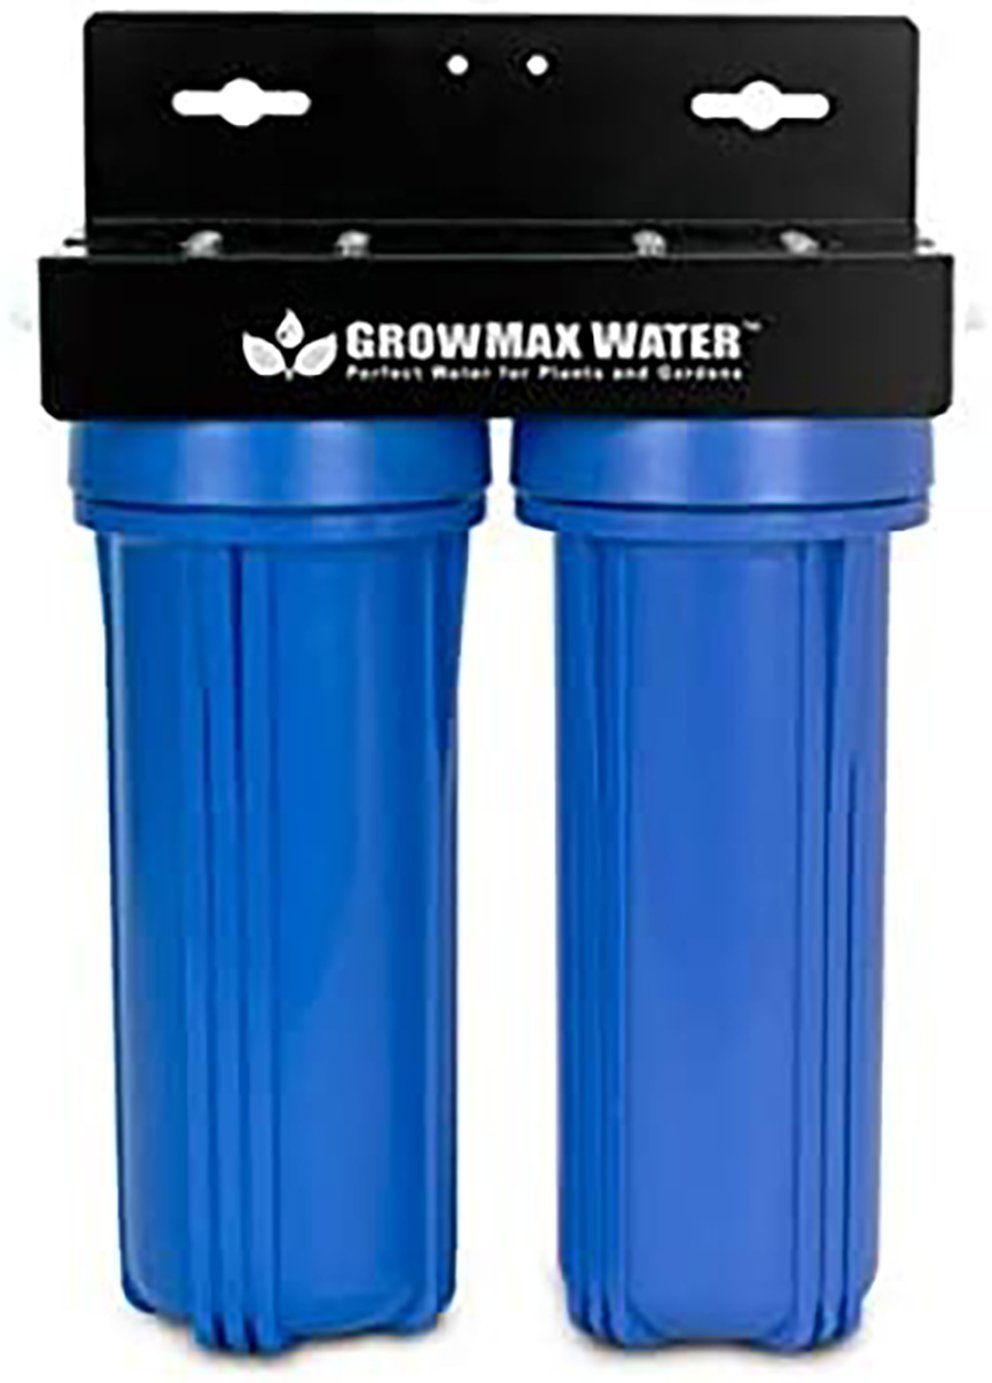 https://i.otto.de/i/otto/633d452e-9ec4-46e7-8d5d-62a0bdd39cbd/weedness-wasserfilter-wasser-filter-anlage-wasserfilter-filteranlage-aquarium-trinkwasser.jpg?$formatz$